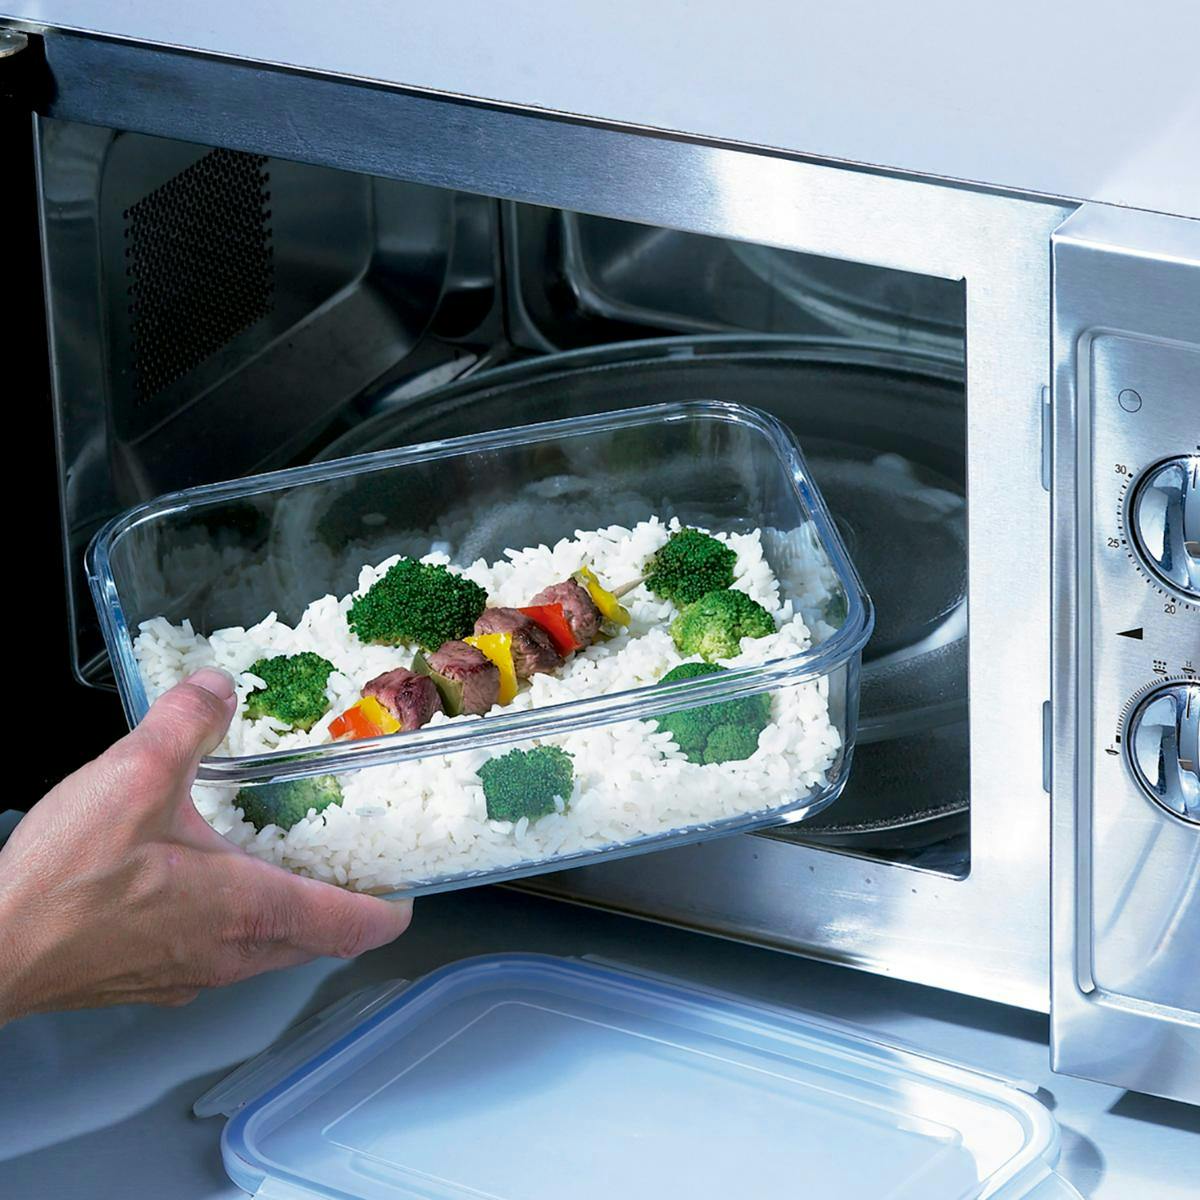 Можно разогревать в контейнерах микроволновки. Посуда для микроволновки. Стеклянная посуда для микроволновки. Посуда СВЧ для микроволновки. Посуда для готовки в микроволновок.